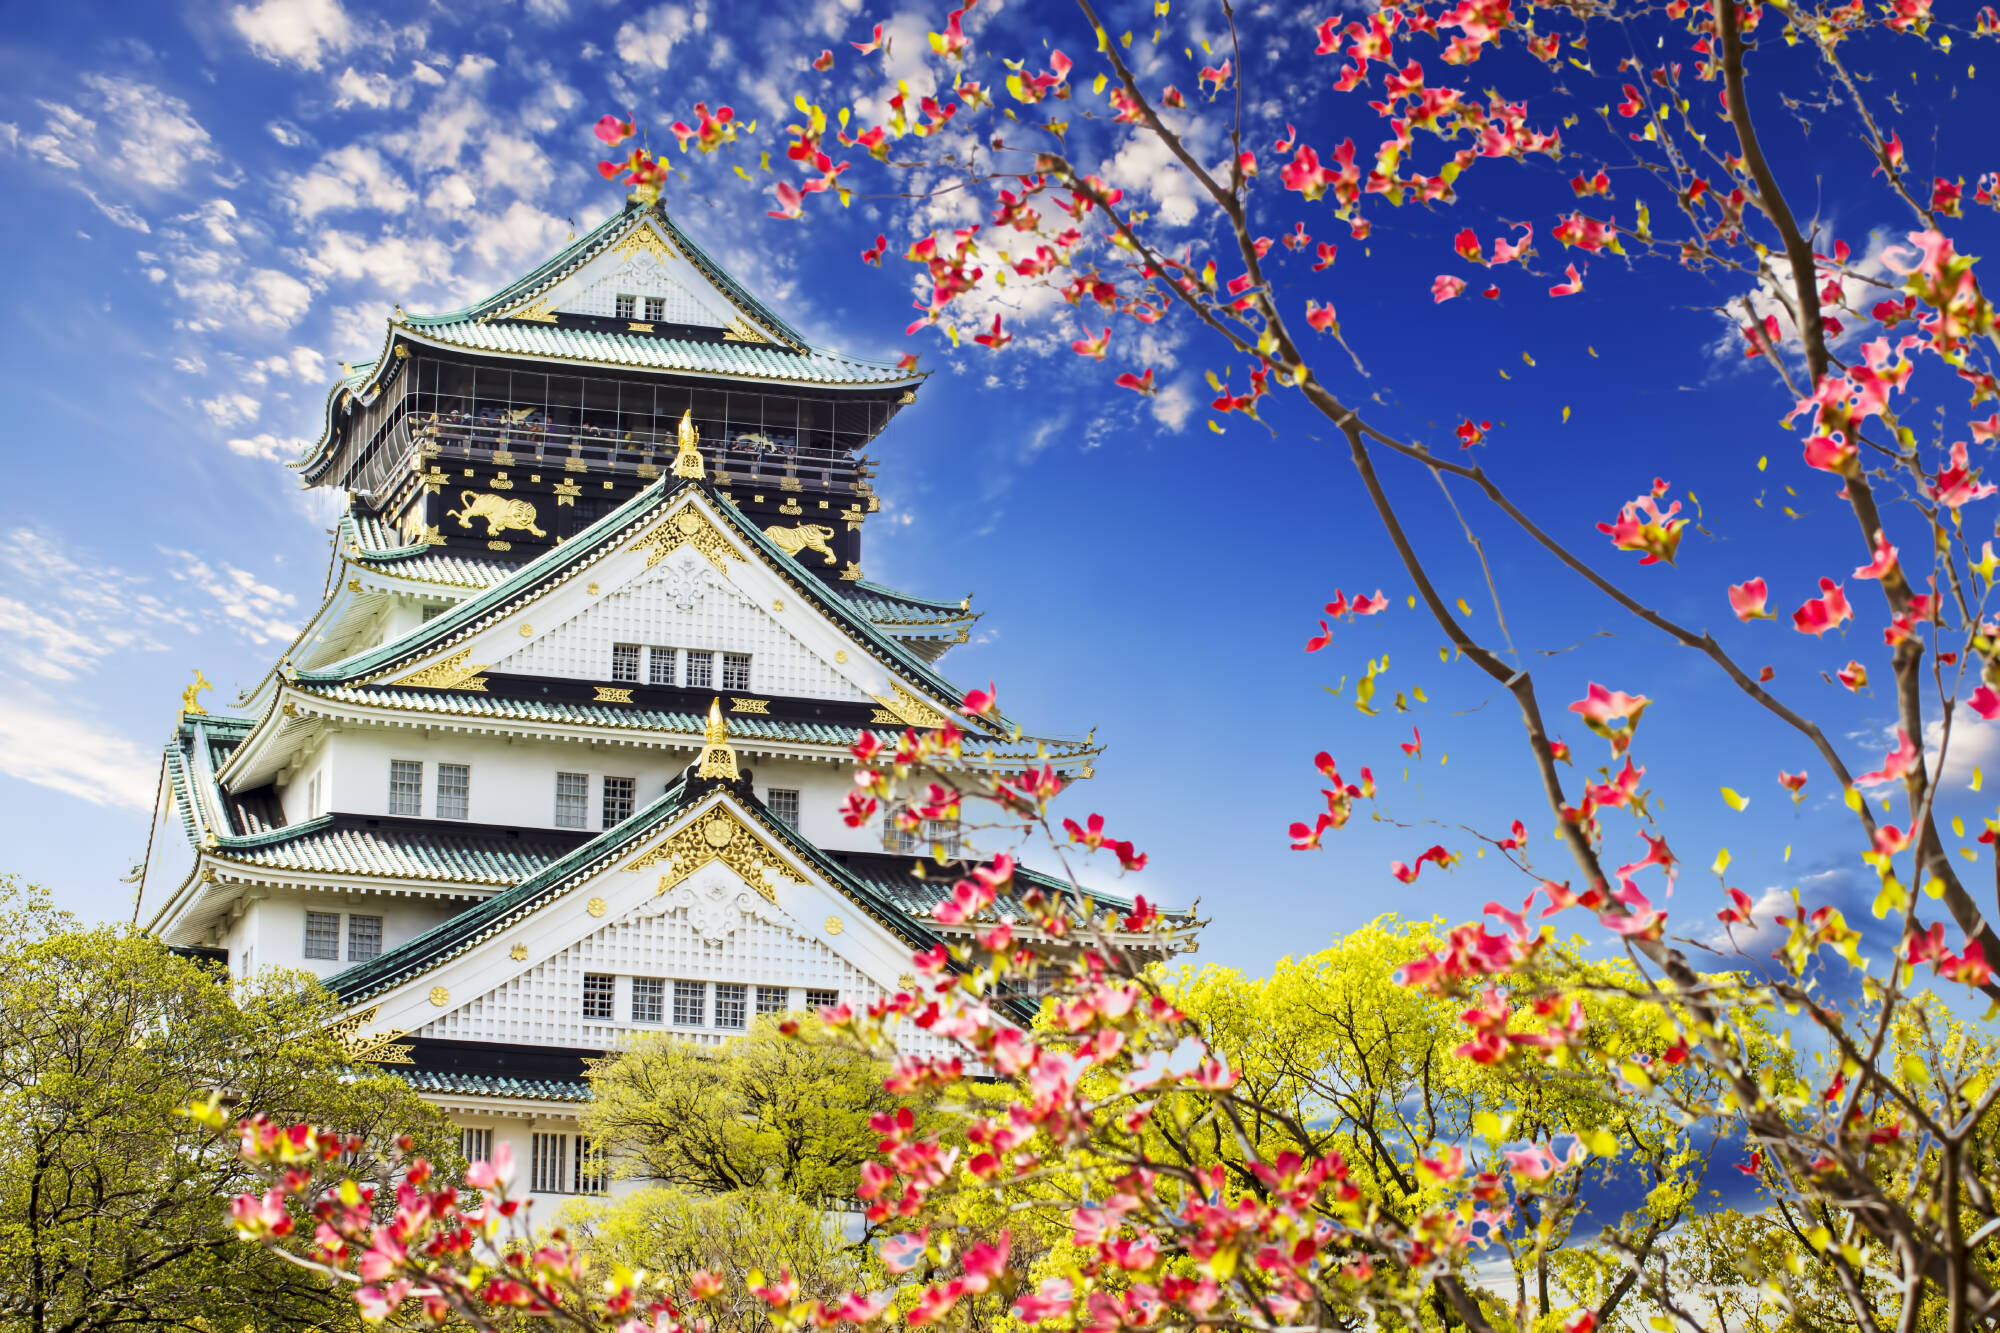 Osaka Reisen und Billigflug - Japan - Hotels und Flug nach Osaka